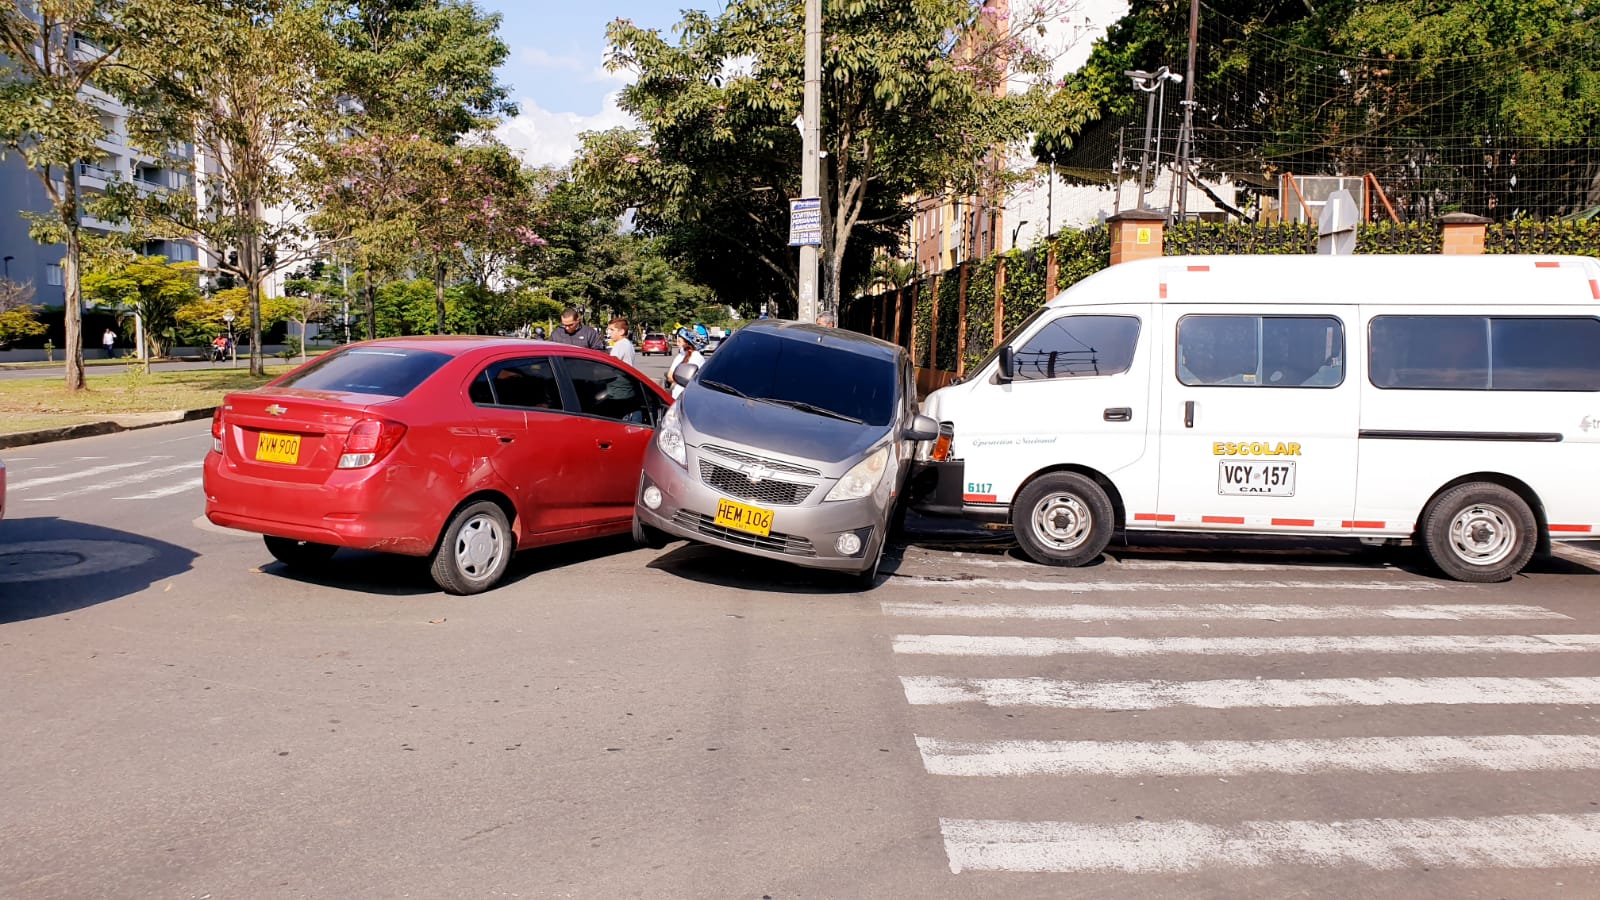 'Sánduche de carros' tras choque múltiple en el barrio Valle del Lili